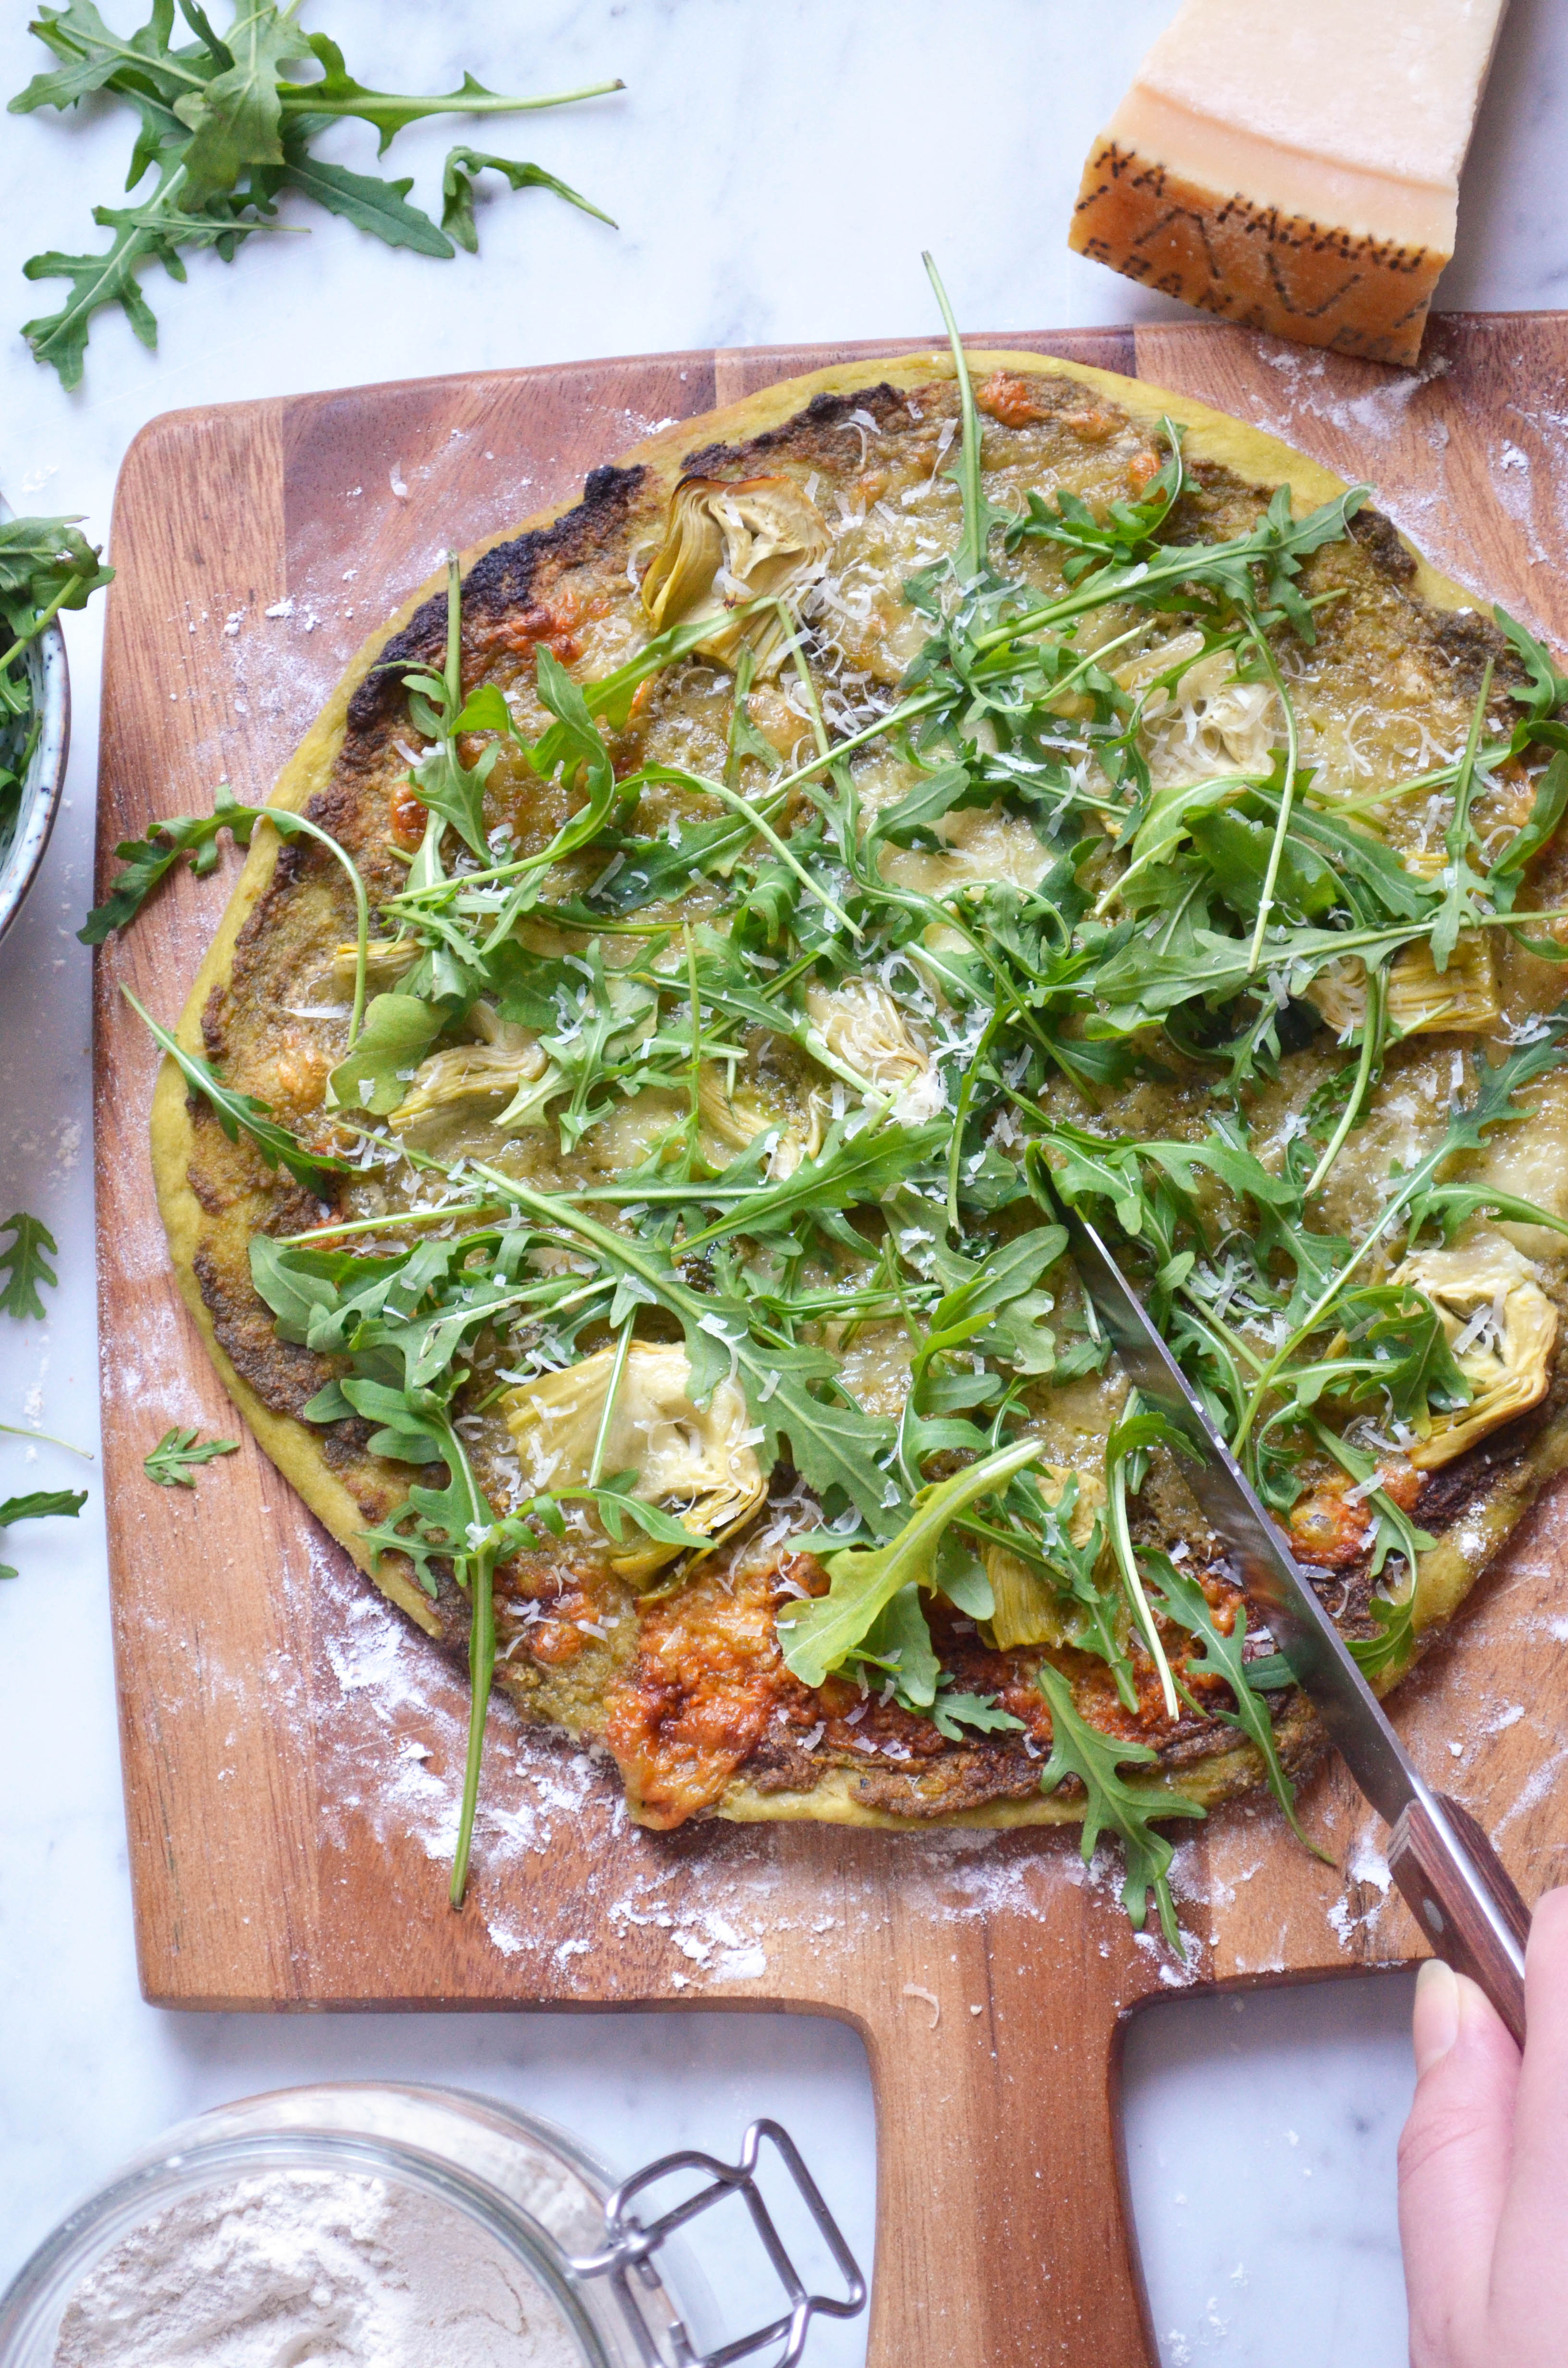 Recipe for homemade pizza dough and pizza verde with pesto, arugula, artichokes, mozzarella and parmesan cheese.